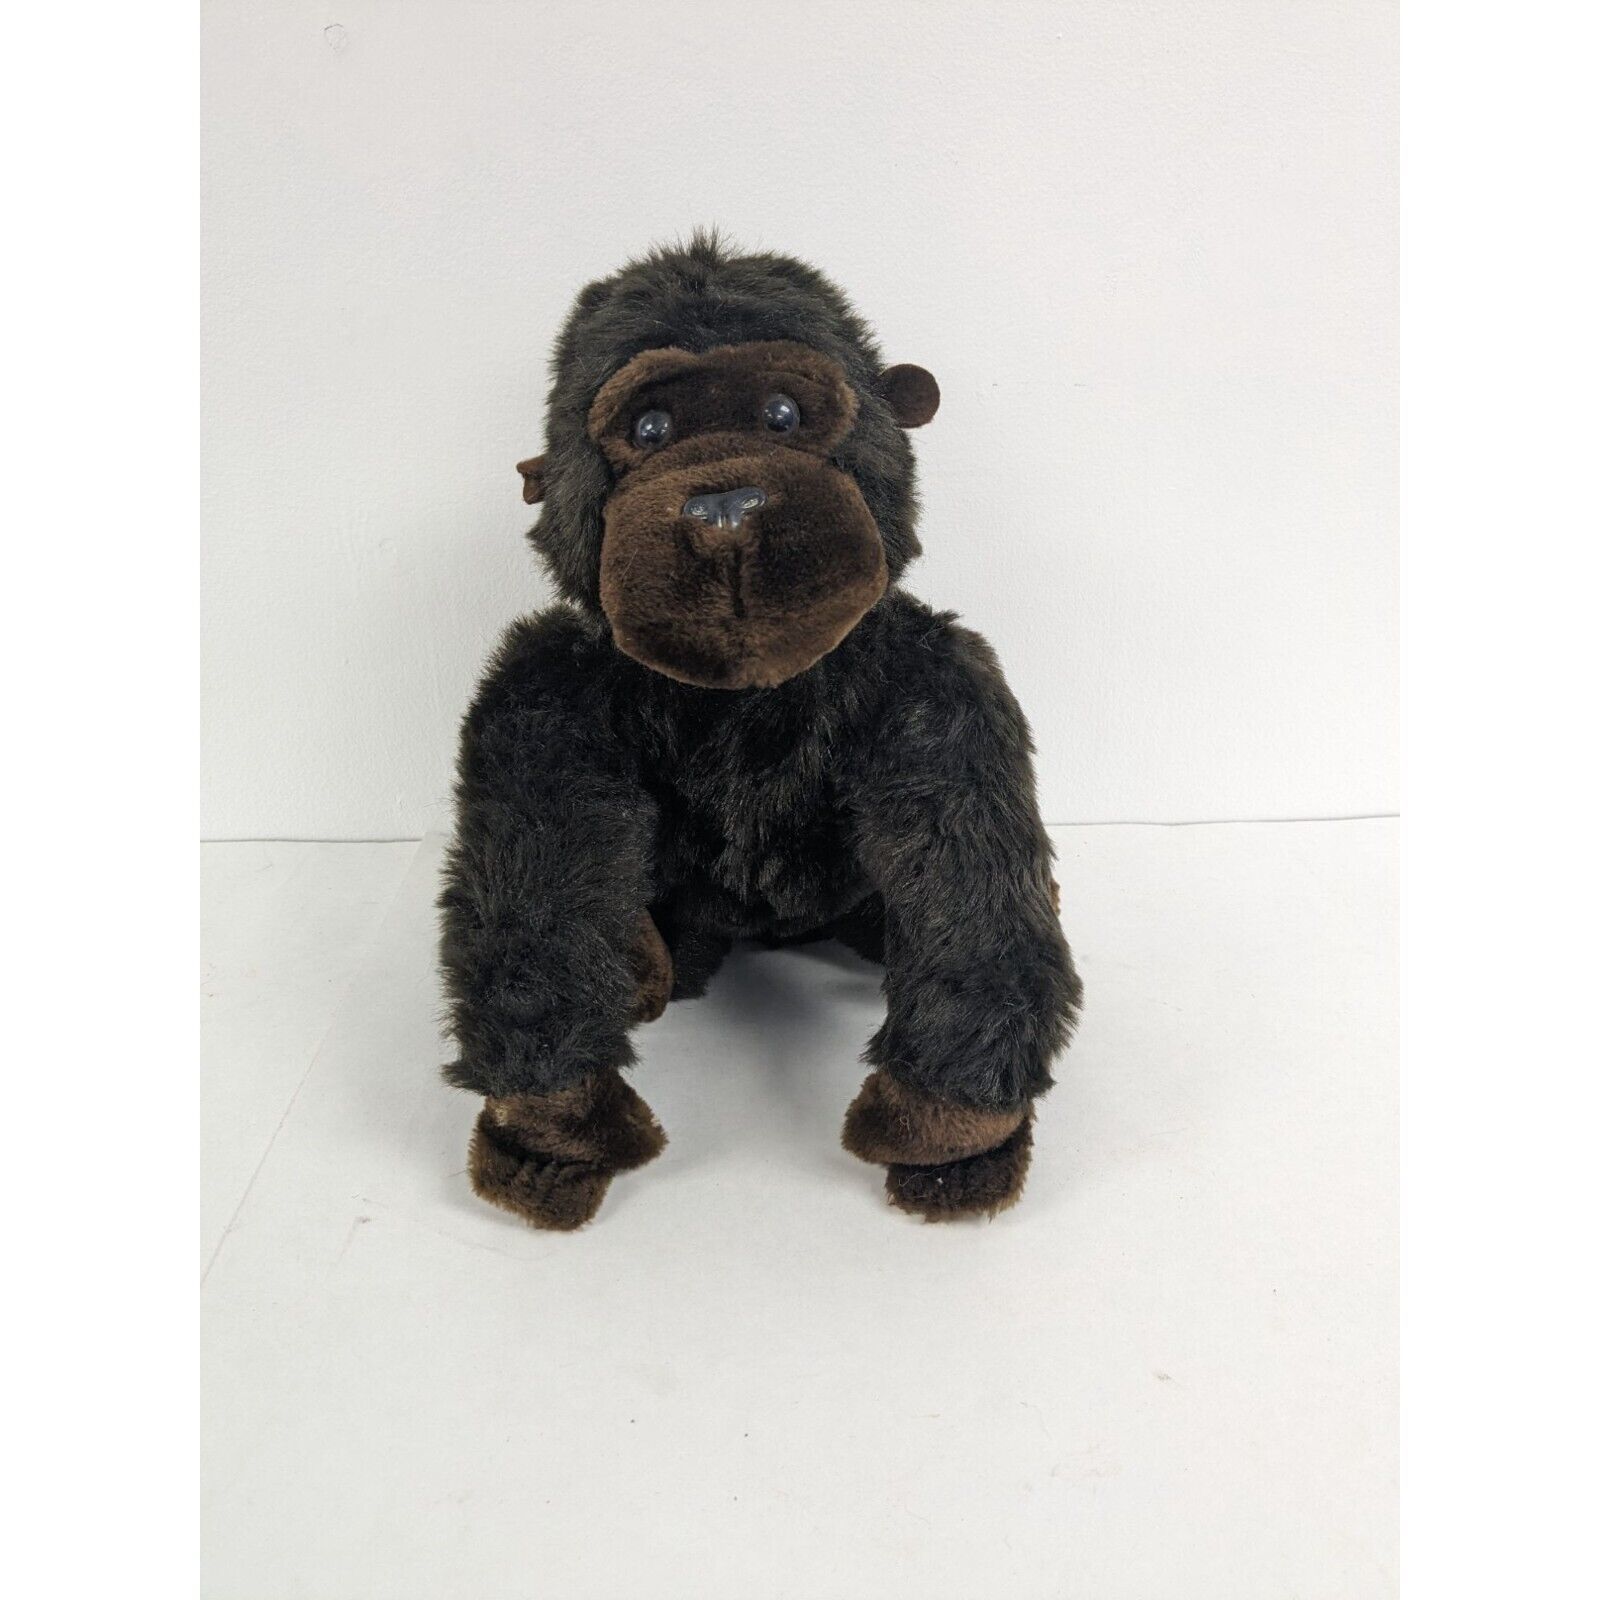 Vintage Dakin Dark Brown Gorilla 1982  Stuffed Animal 14" - $24.97